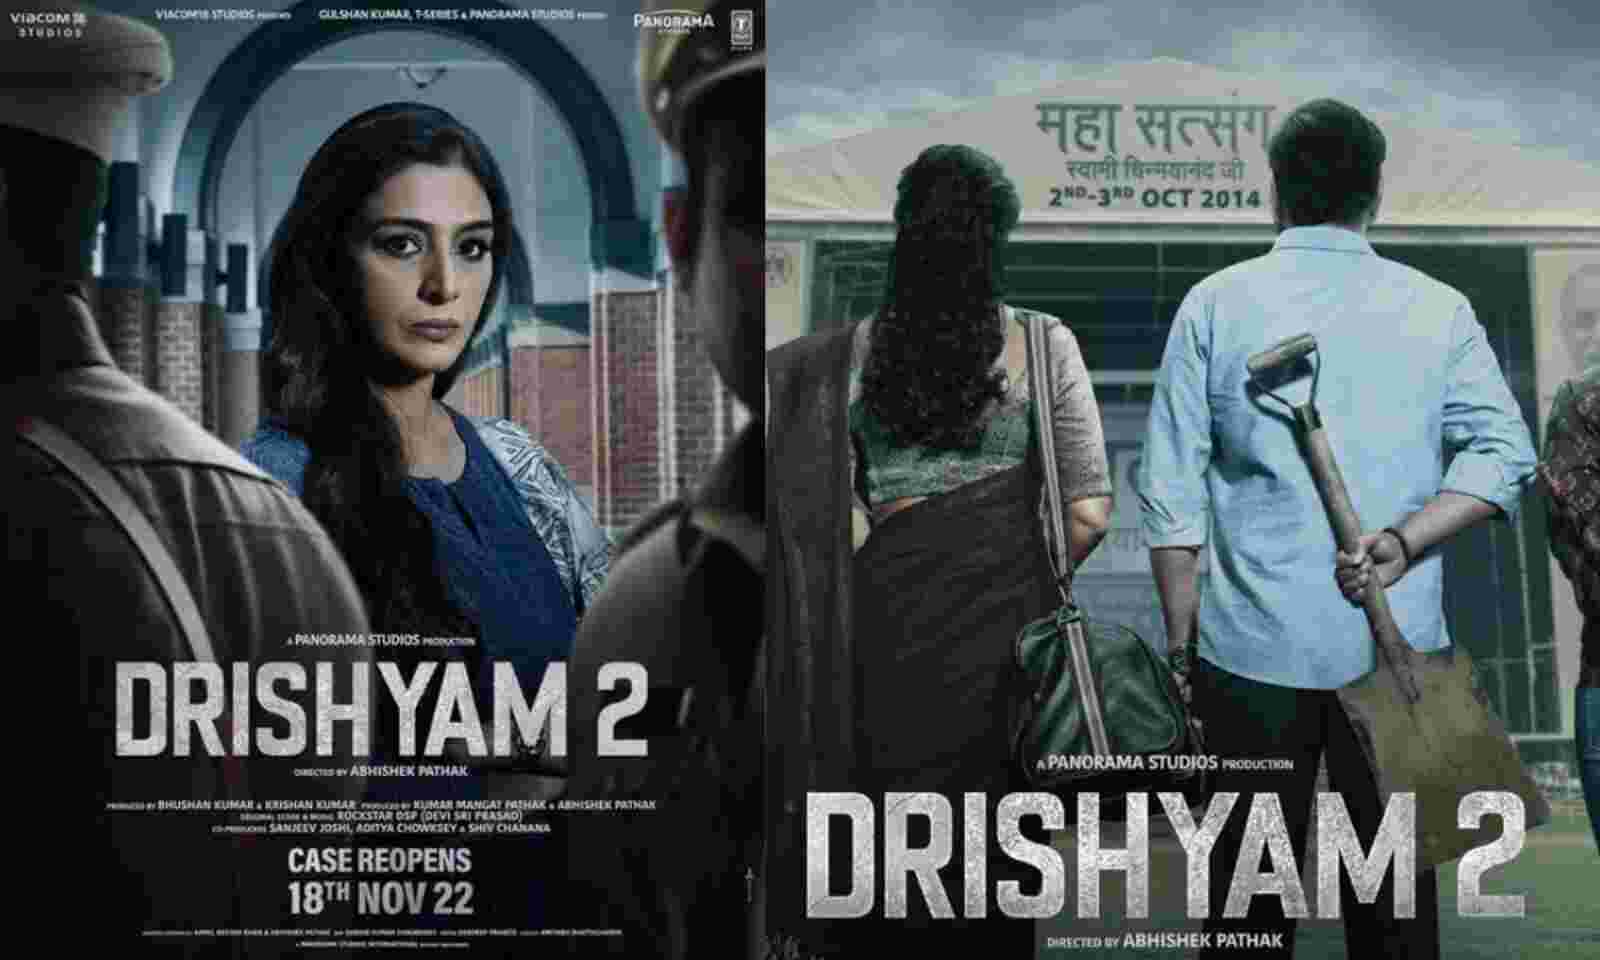 Drishyam 2 First look Poster Released: अजय देवगन ने शेयर किया दृश्यम 2 का फर्स्ट लुक